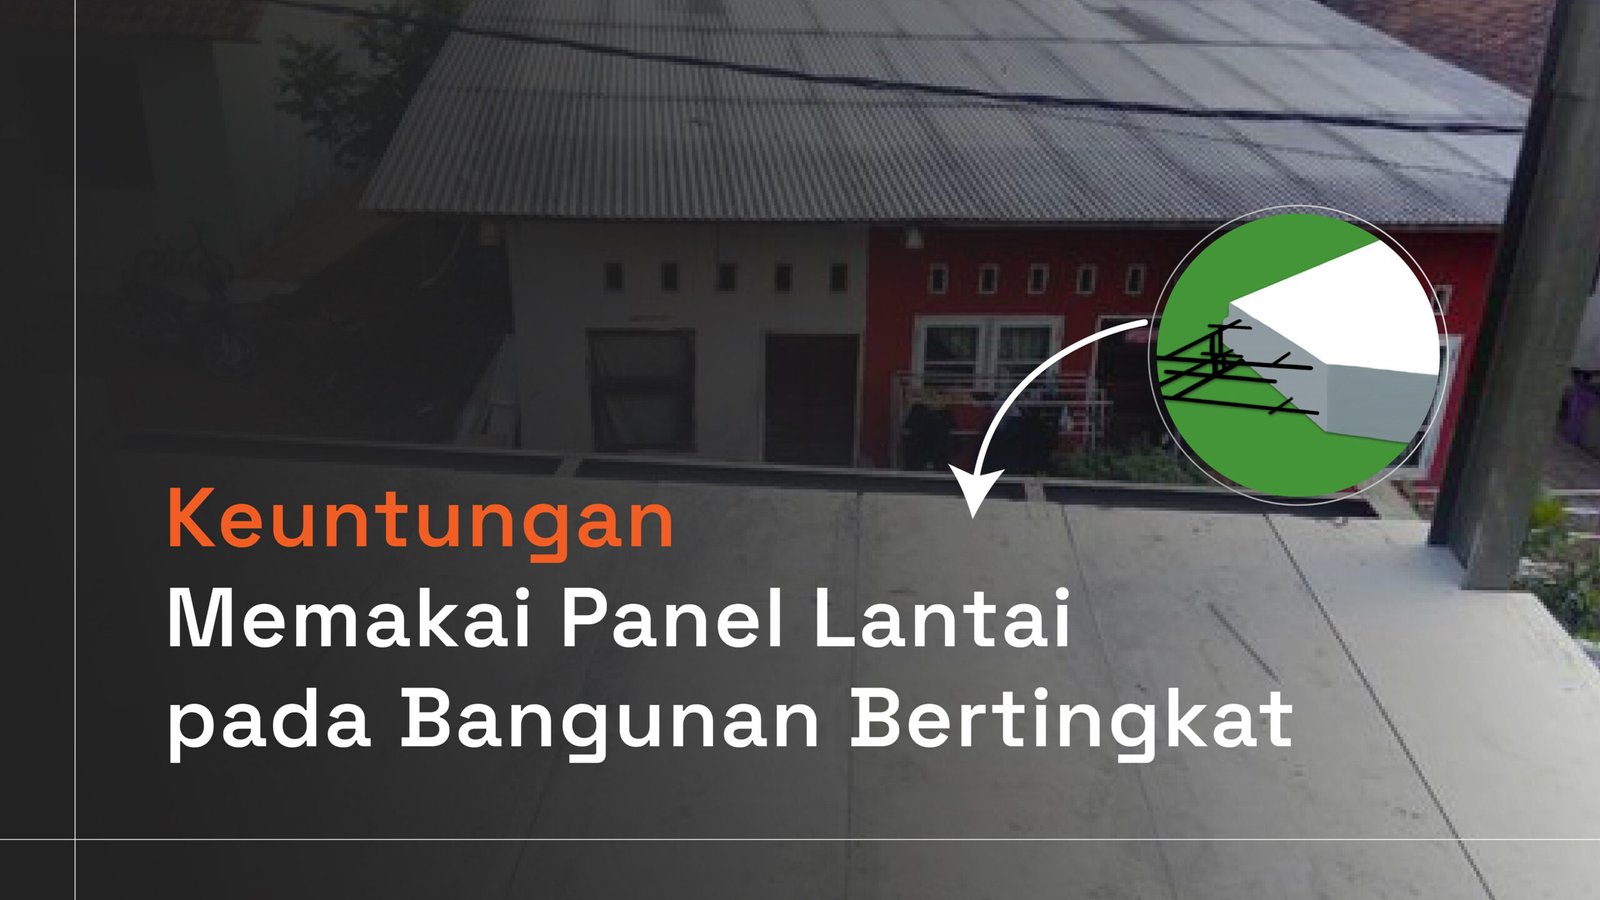 Read more about the article Keuntungan Memakai Panel Lantai pada Bangunan Bertingkat.